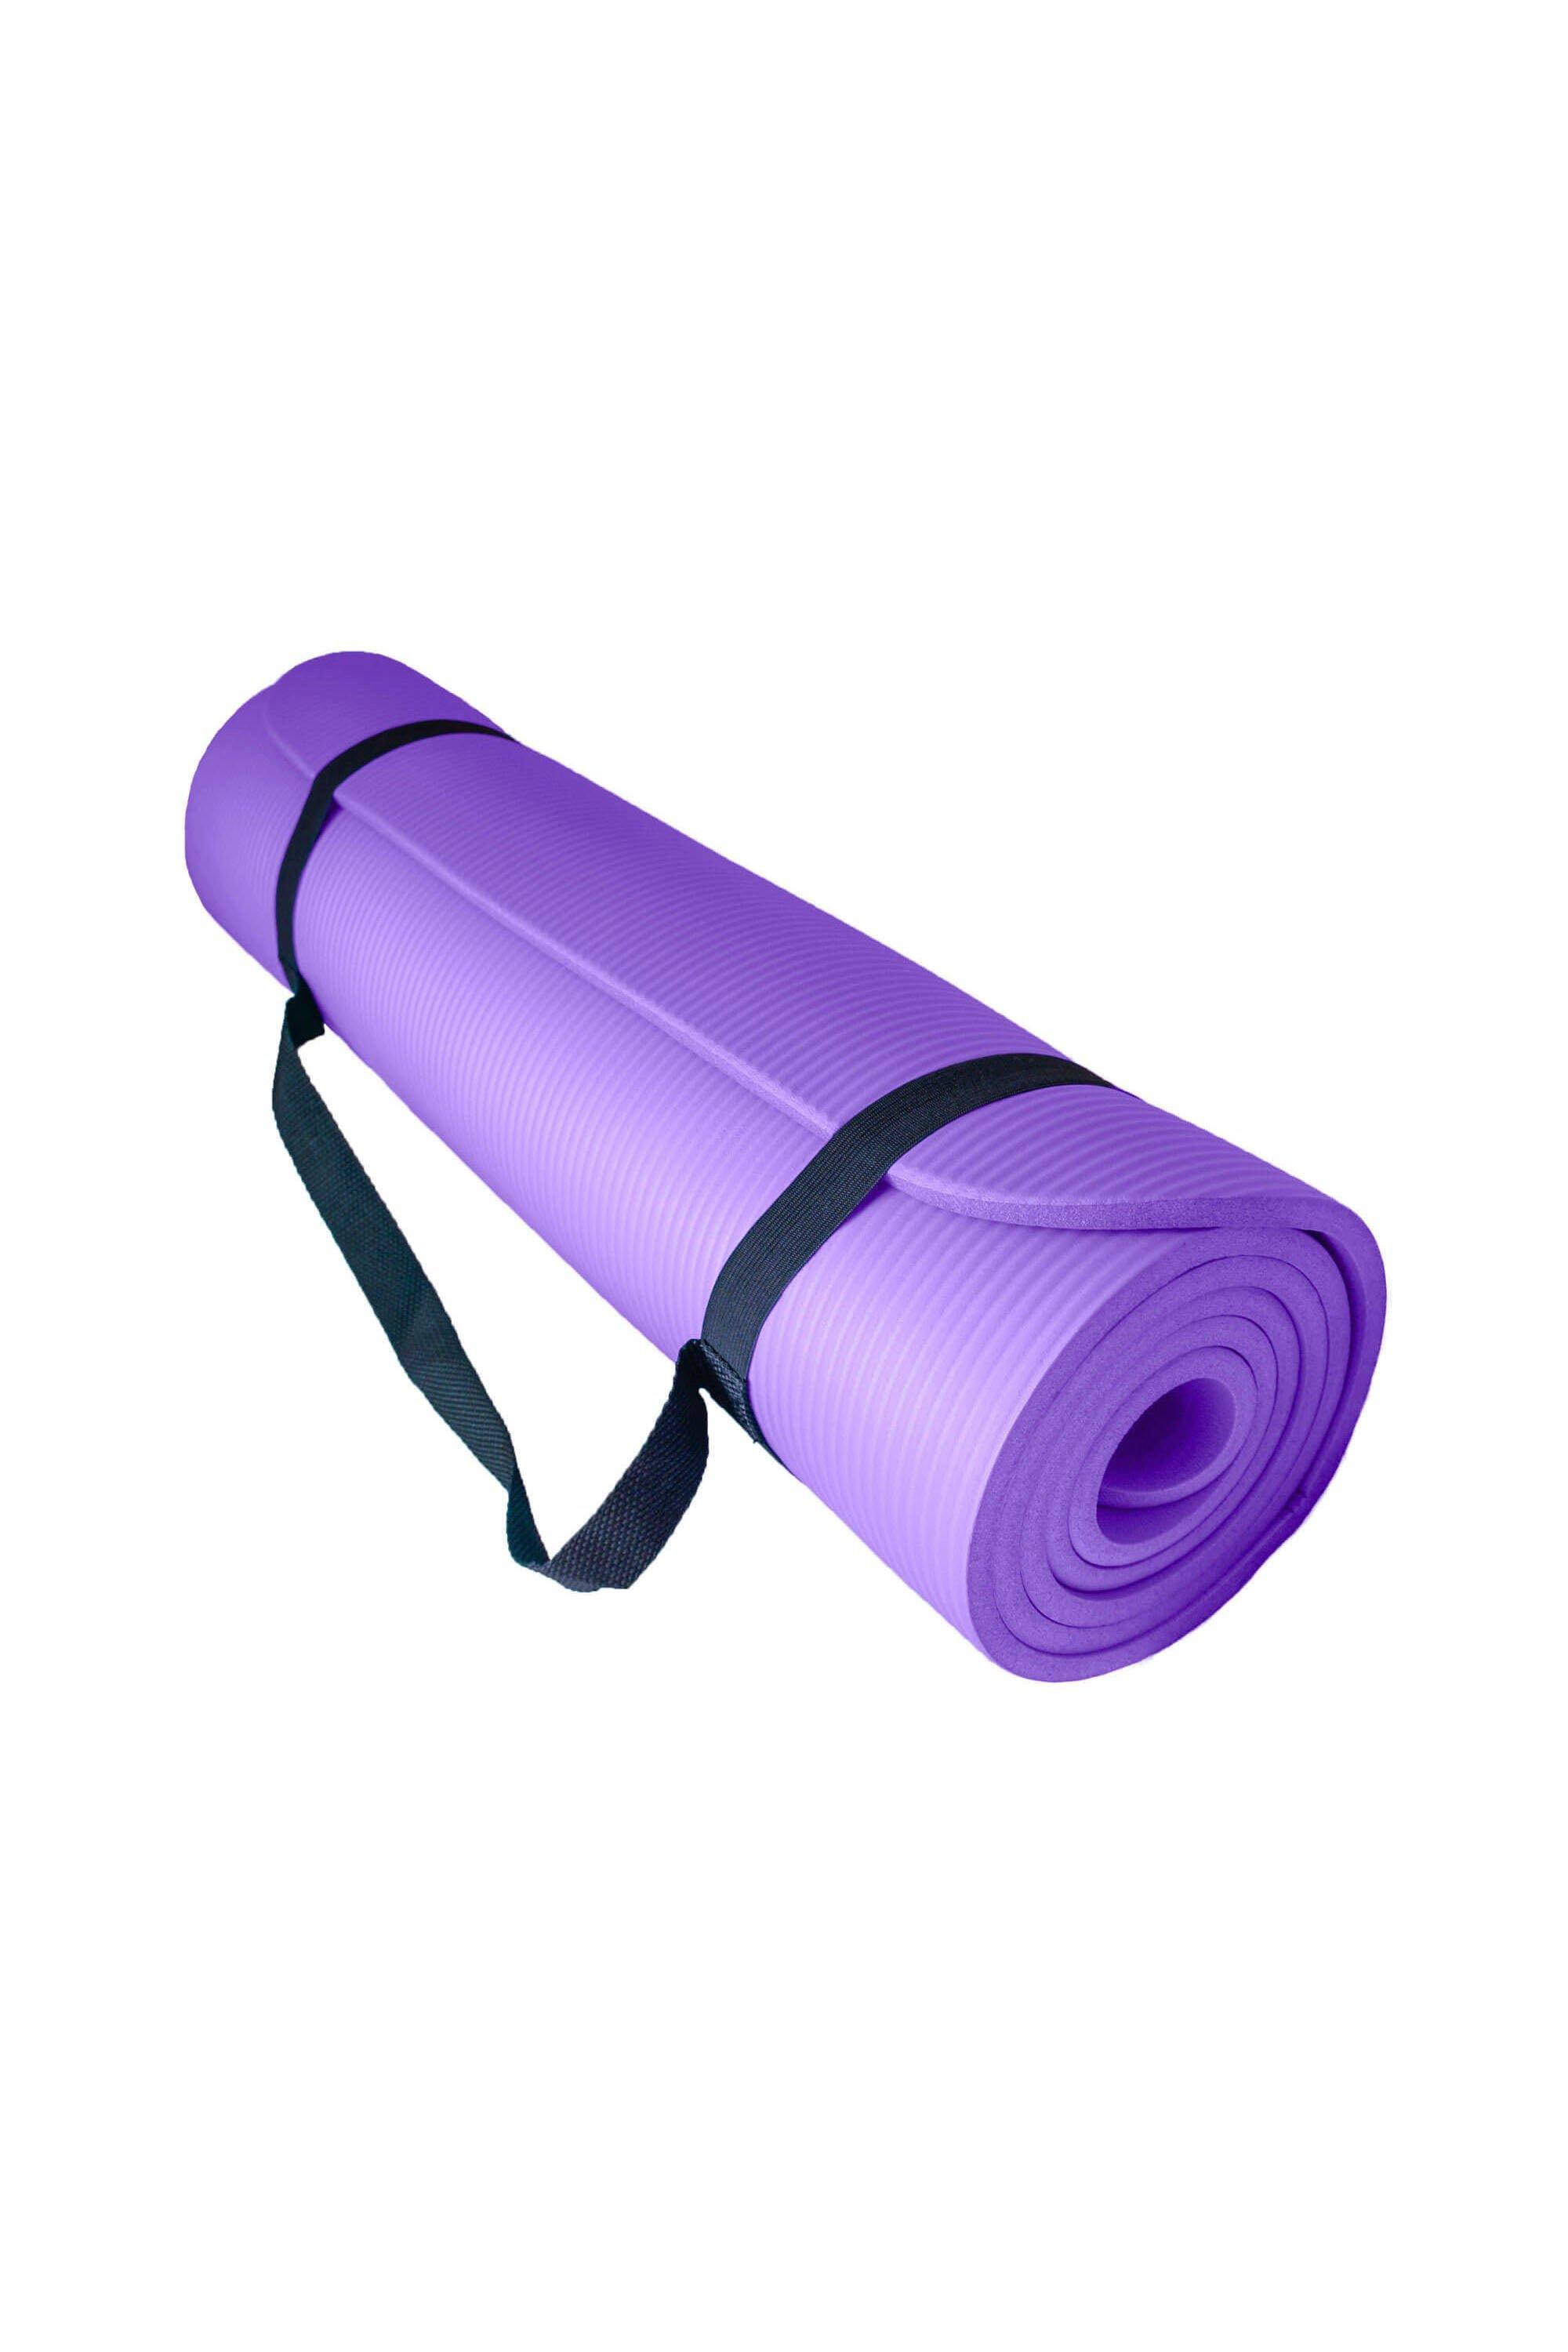 Мягкий коврик для упражнений для йоги с воздушным потоком 10 мм Azure, фиолетовый коврик для йоги triangles yc из микрофибры и каучука